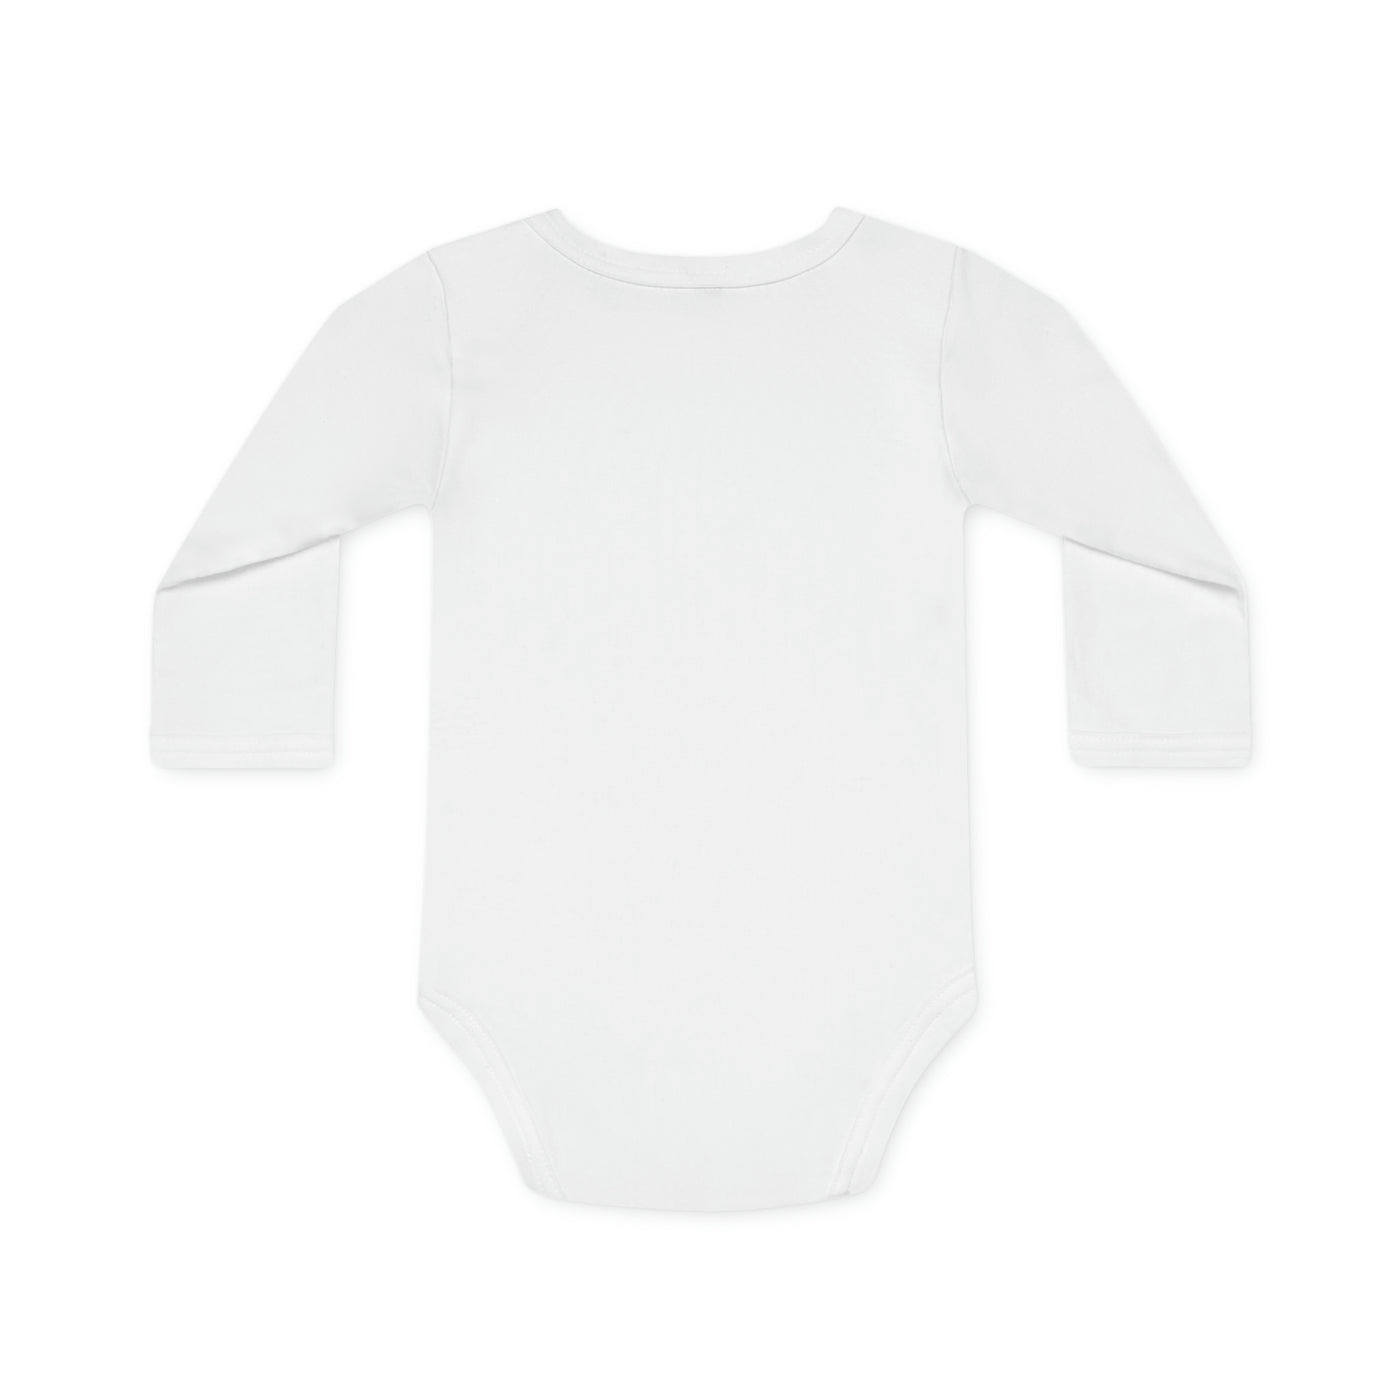 Long-Sleeve Organic Prosperity Baby Bodysuit